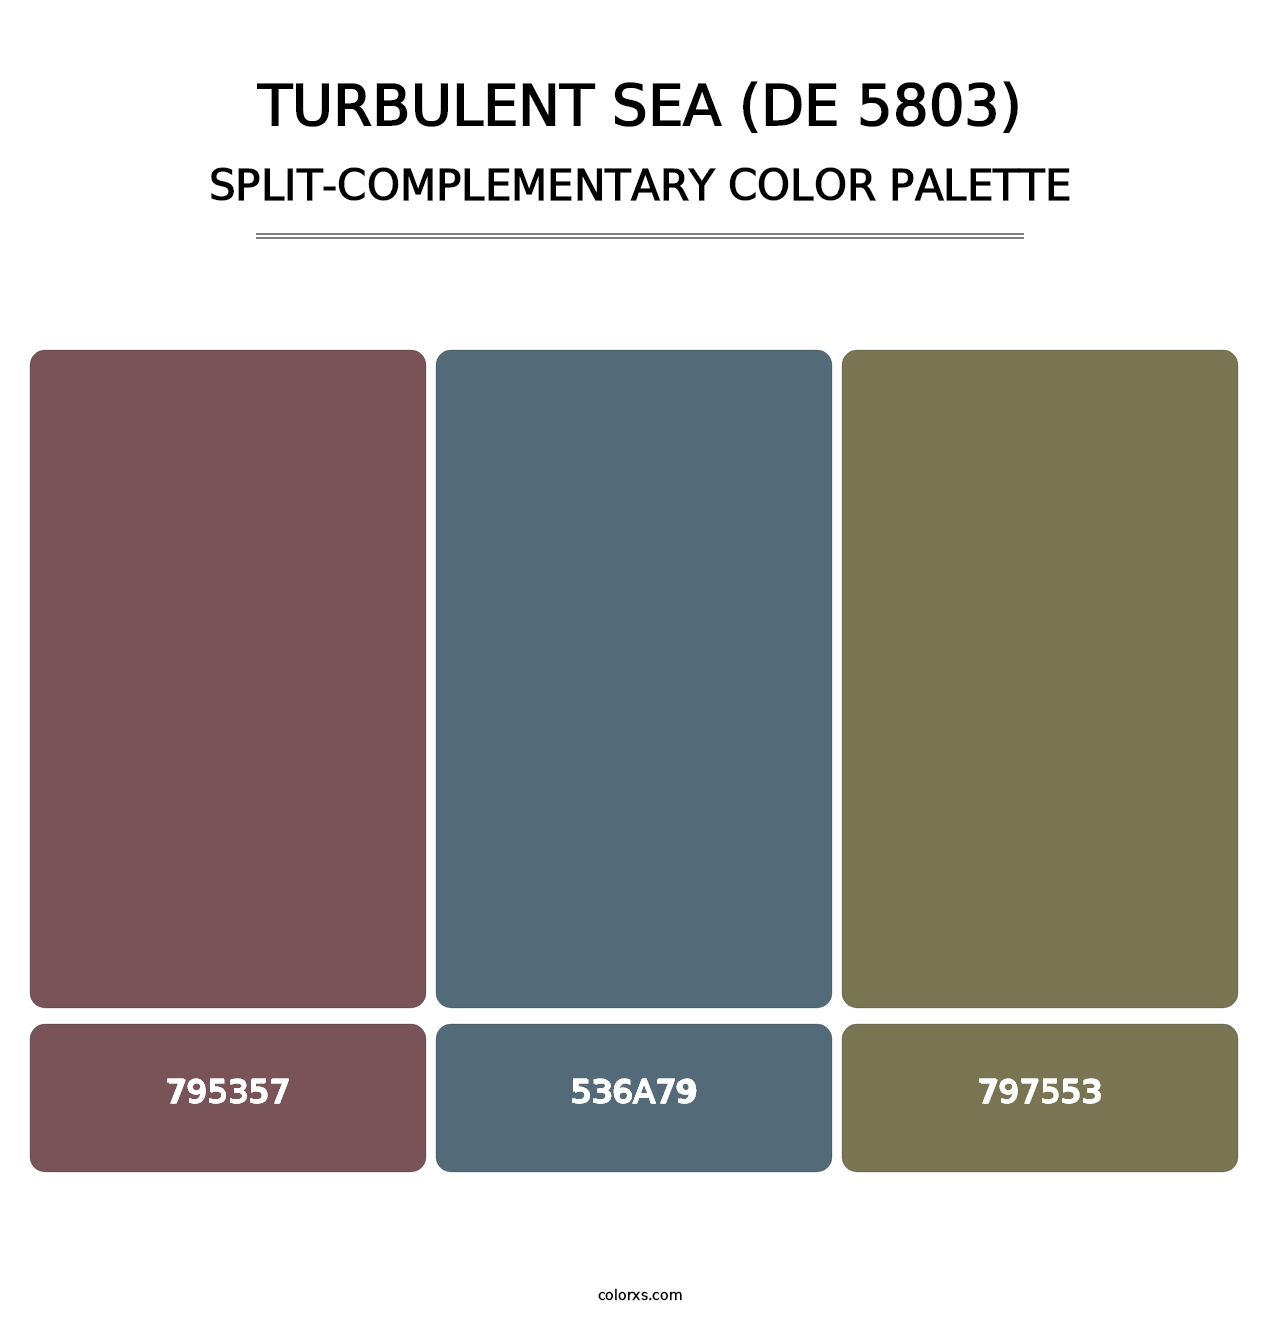 Turbulent Sea (DE 5803) - Split-Complementary Color Palette